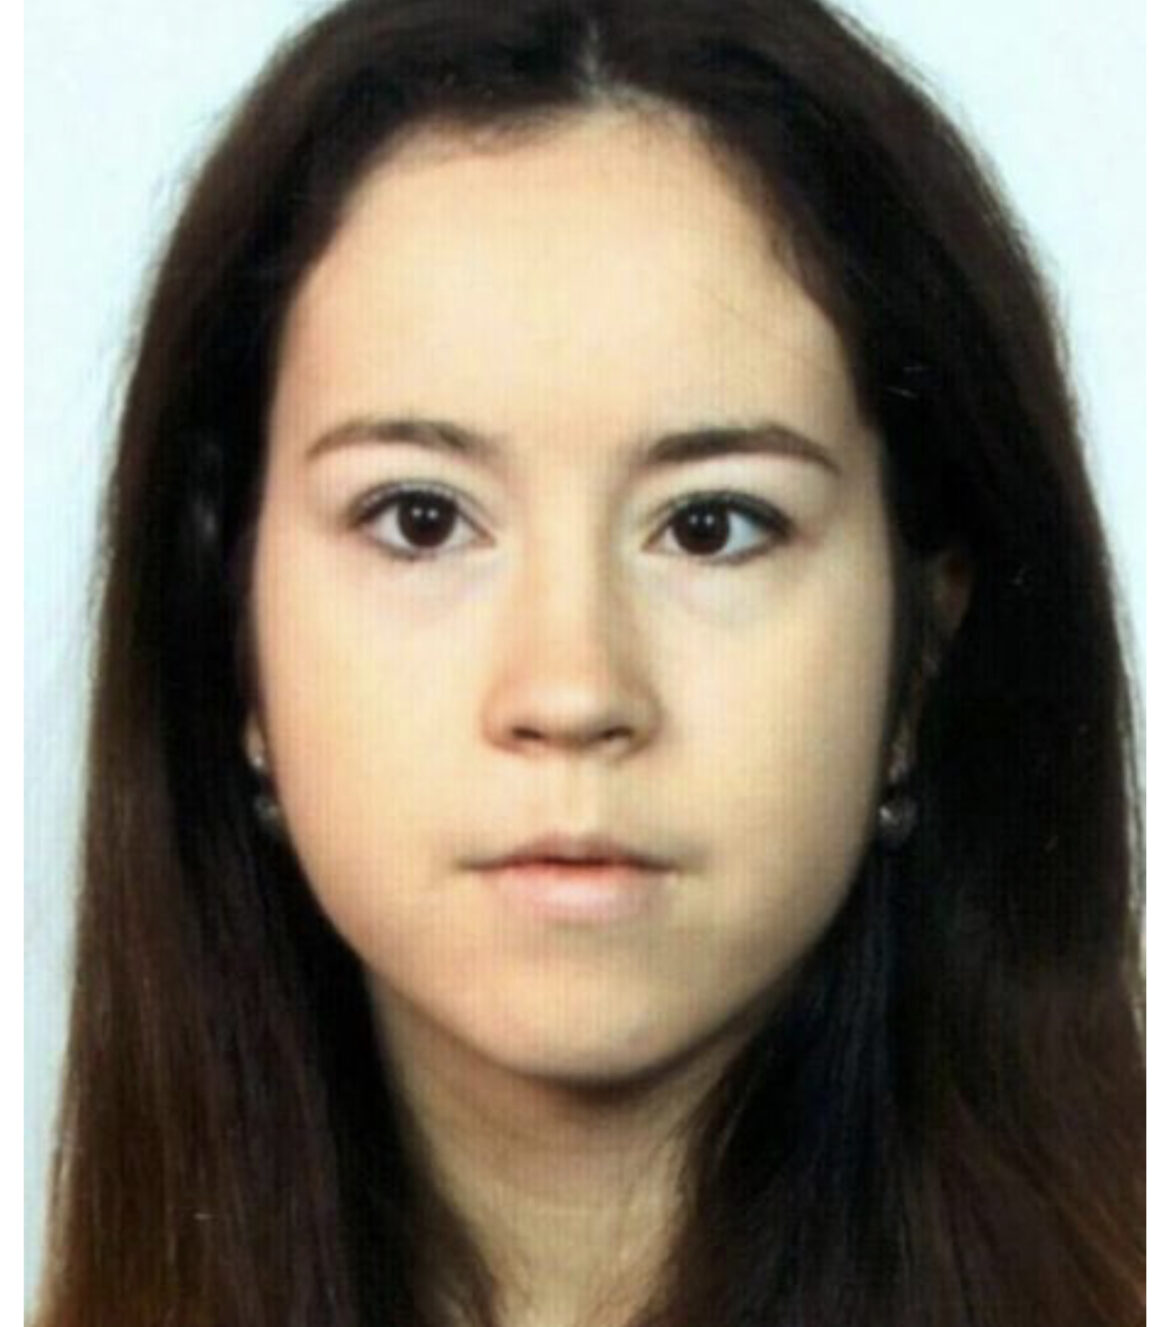 Nestala Tina (22) iz Splita: Poslednji put viđena u crnom BMW-u na graničnom prelazu u Sloveniji